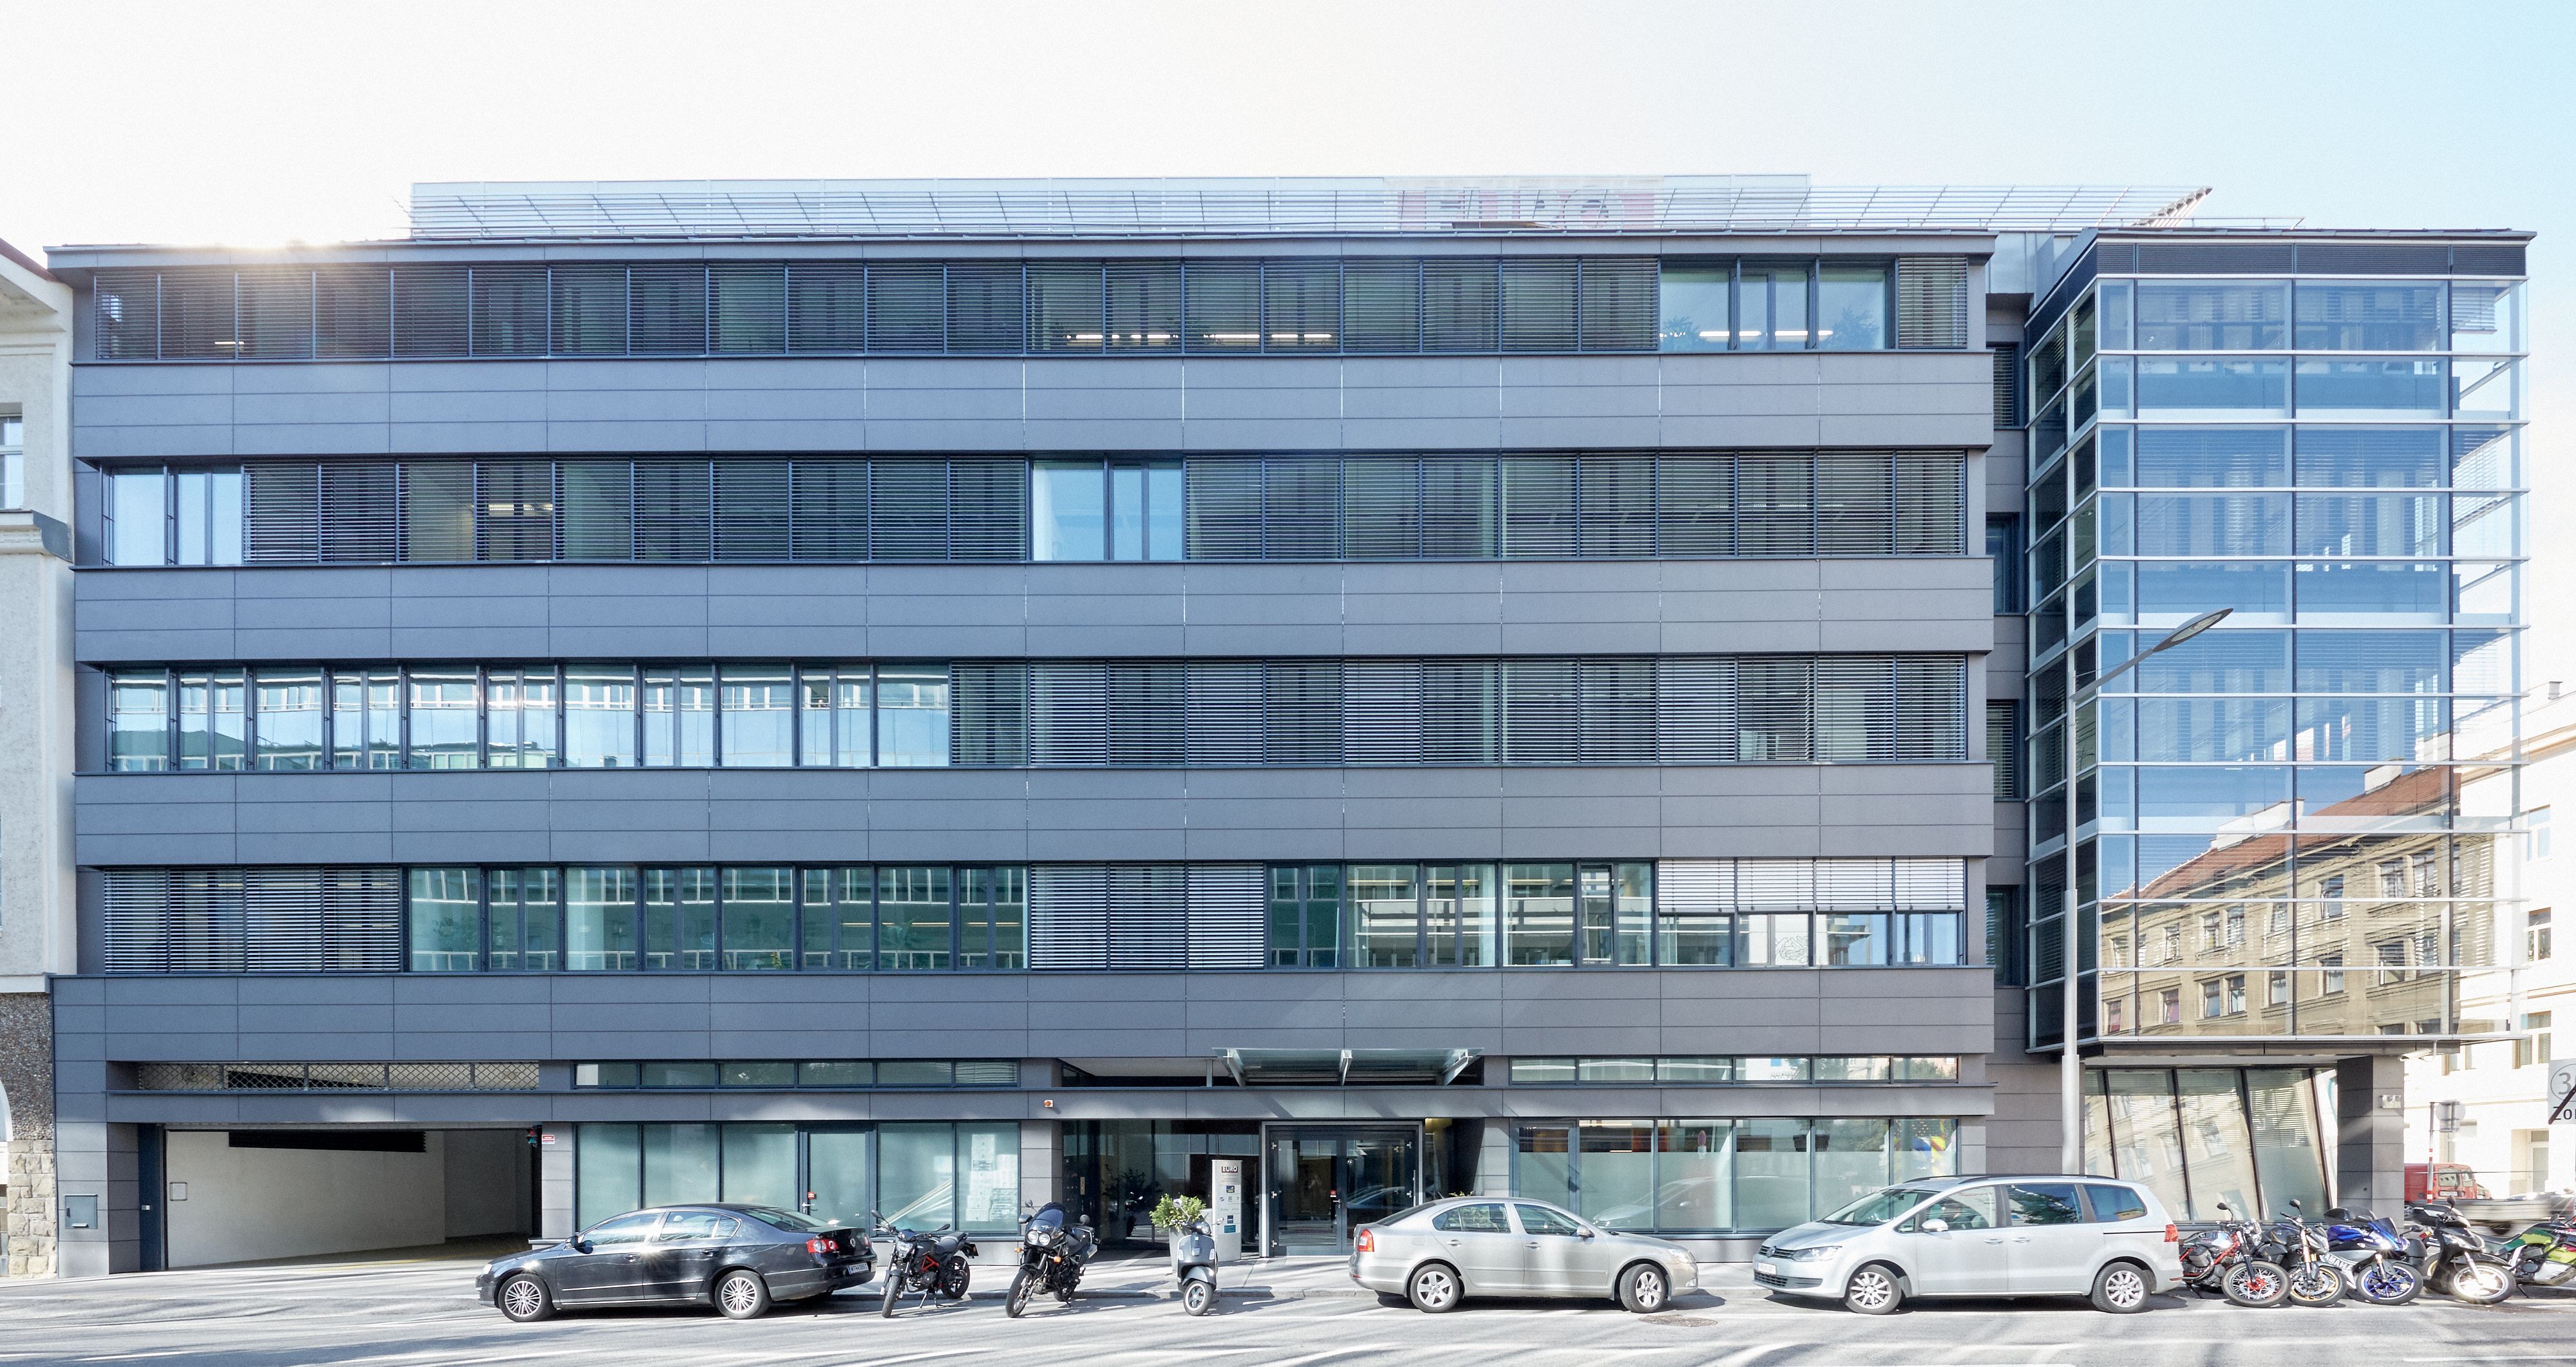 Foto: modernes Bürogebäude mit fünf Geschoßen bestehend aus zwei Teilen: einer mit Alu-Glas-Fassade, der andere mit einer vorgesetzten Glasfront; im Vordergrund parkende Autos und Motorräder